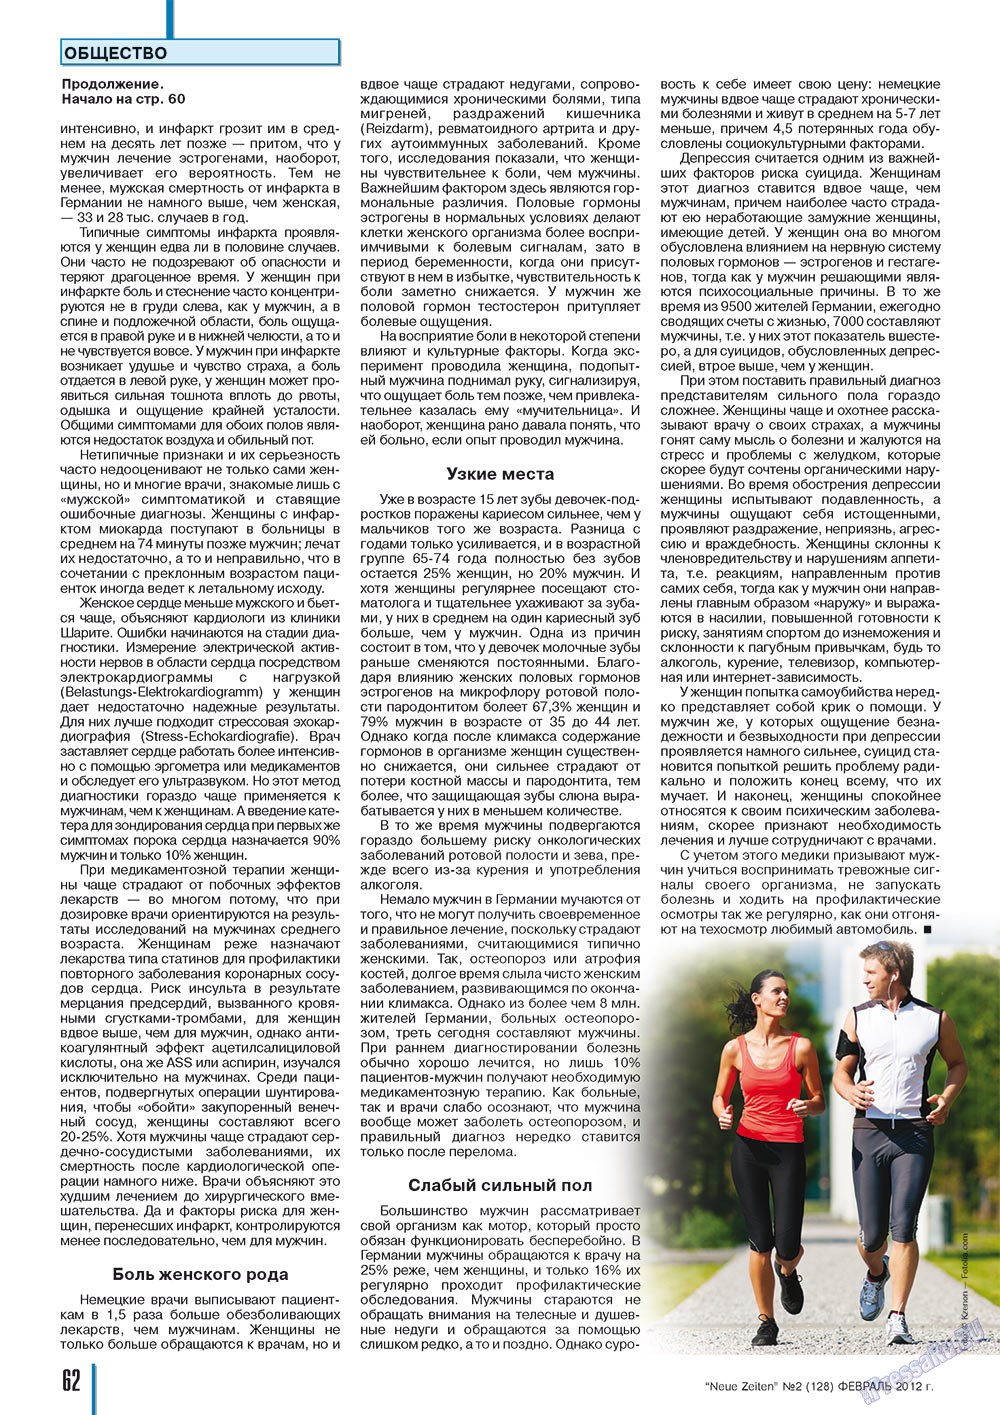 Neue Zeiten, журнал. 2012 №2 стр.62